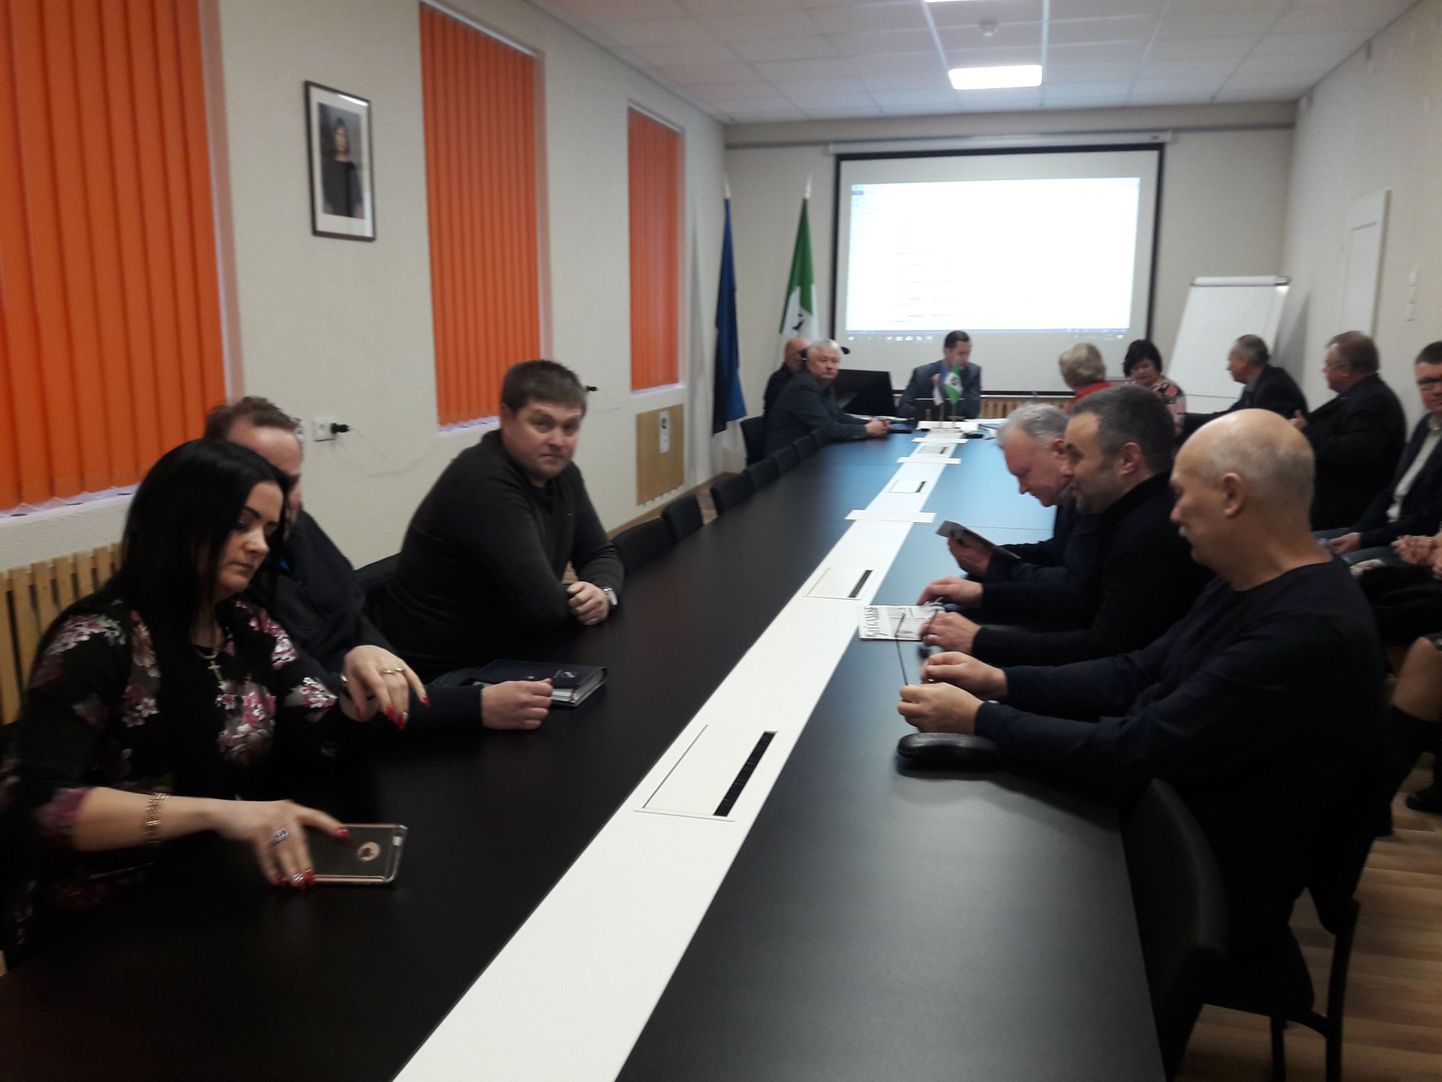 В понедельник в 12.00 на заседание Люганузеского волостного собрания пришли только 8 депутатов от коалиции и проголосовали против вотума недоверия руководителям волости.